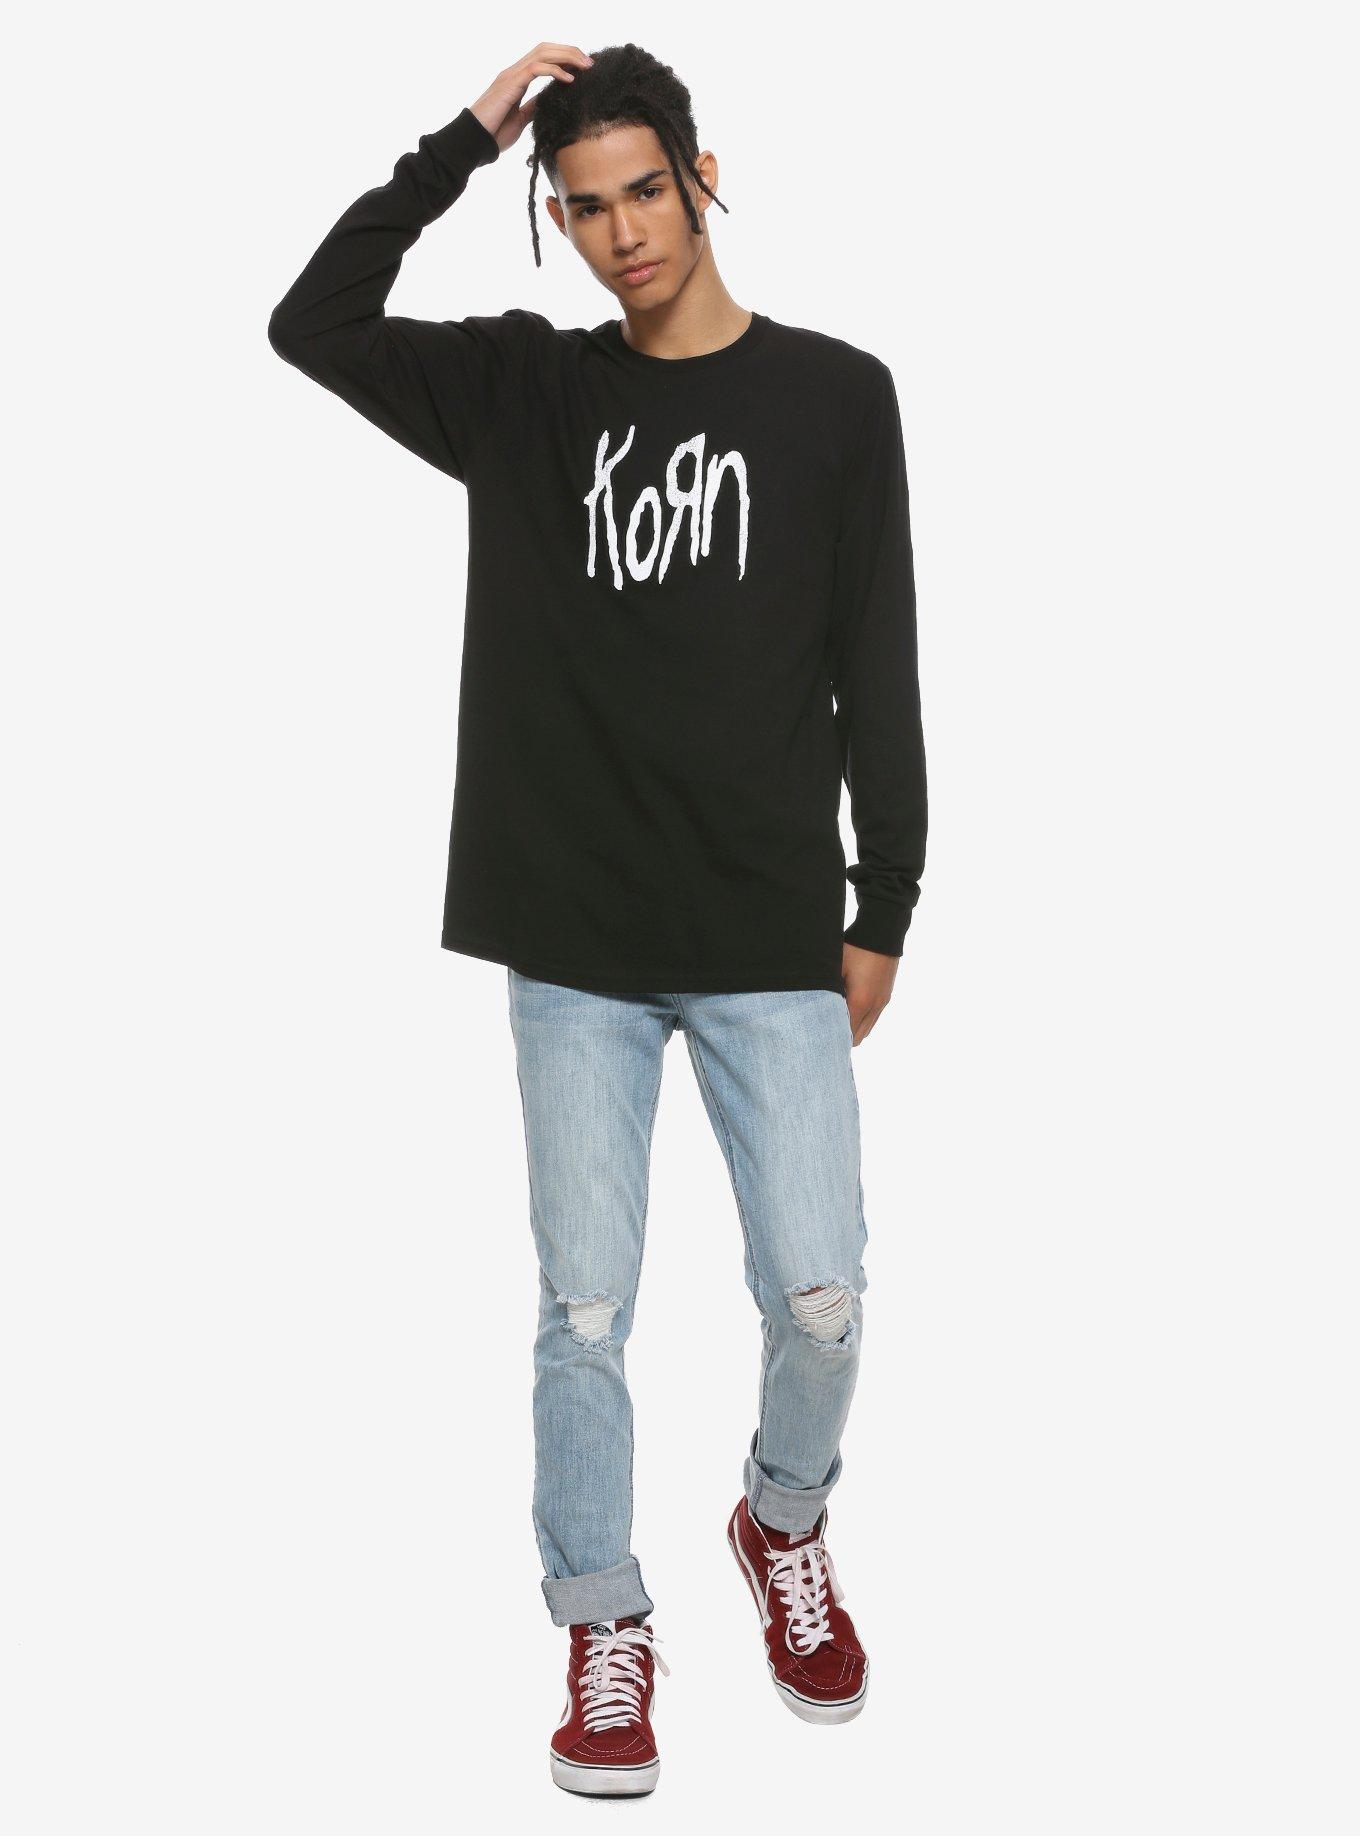 Korn The Nothing Album Art Long-Sleeve T-Shirt, BLACK, alternate